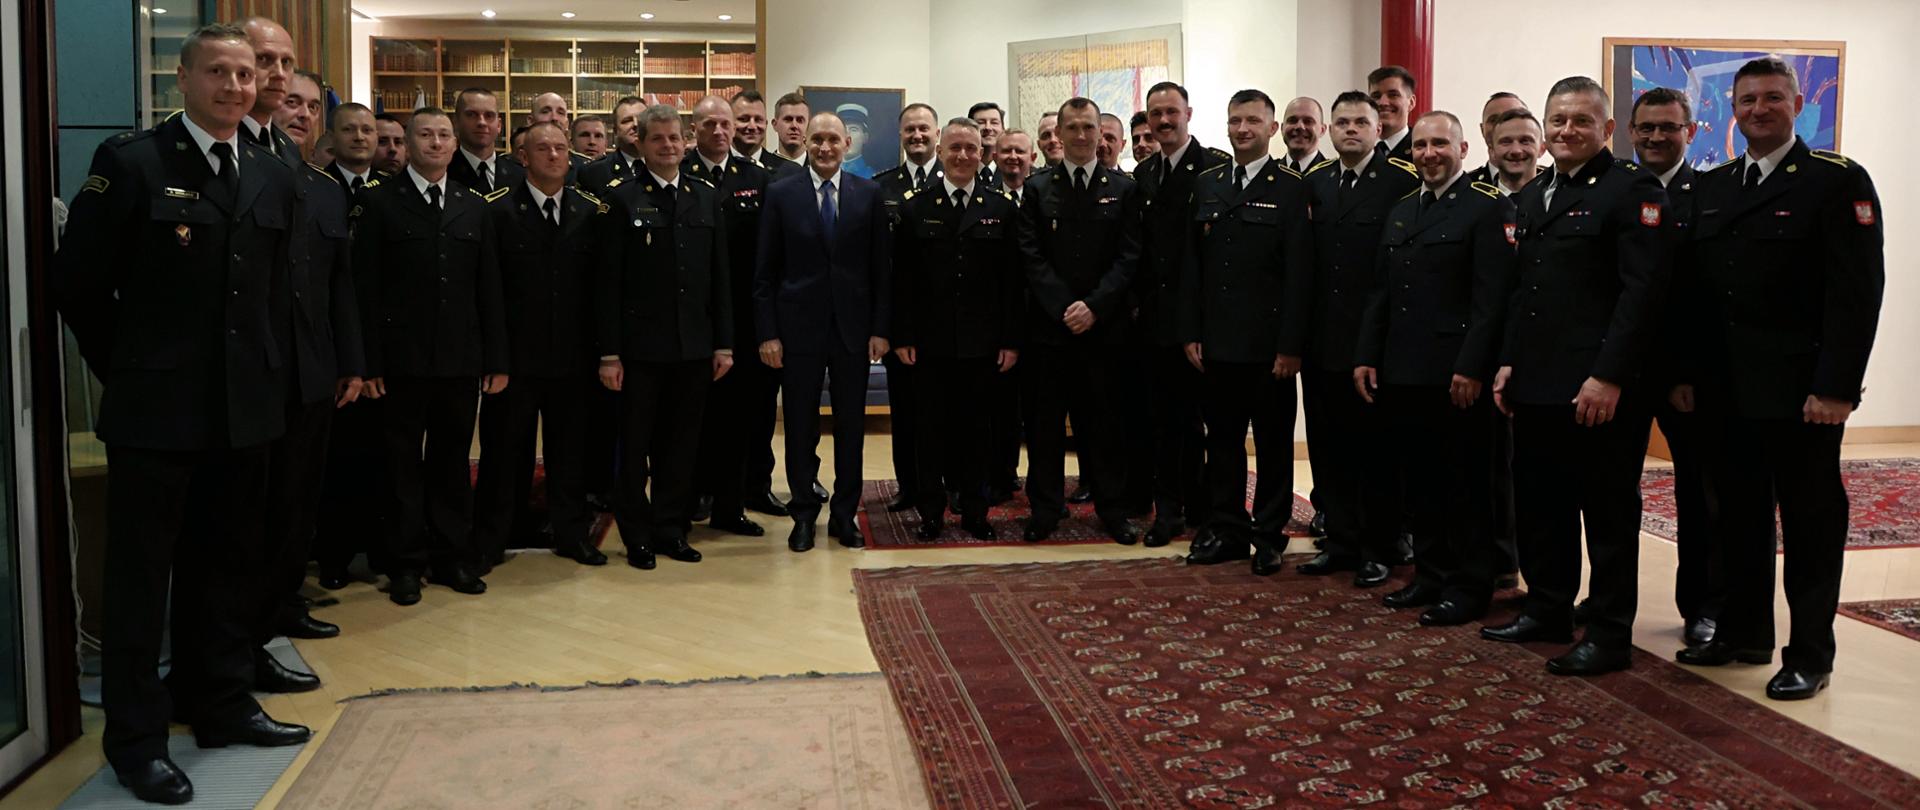 Na zdjęciu widać wszystkich strażaków modułu GFFFV, komendanta głównego PSP oraz przedstawicieli ambasady podczas wspólnego zdjęcia 